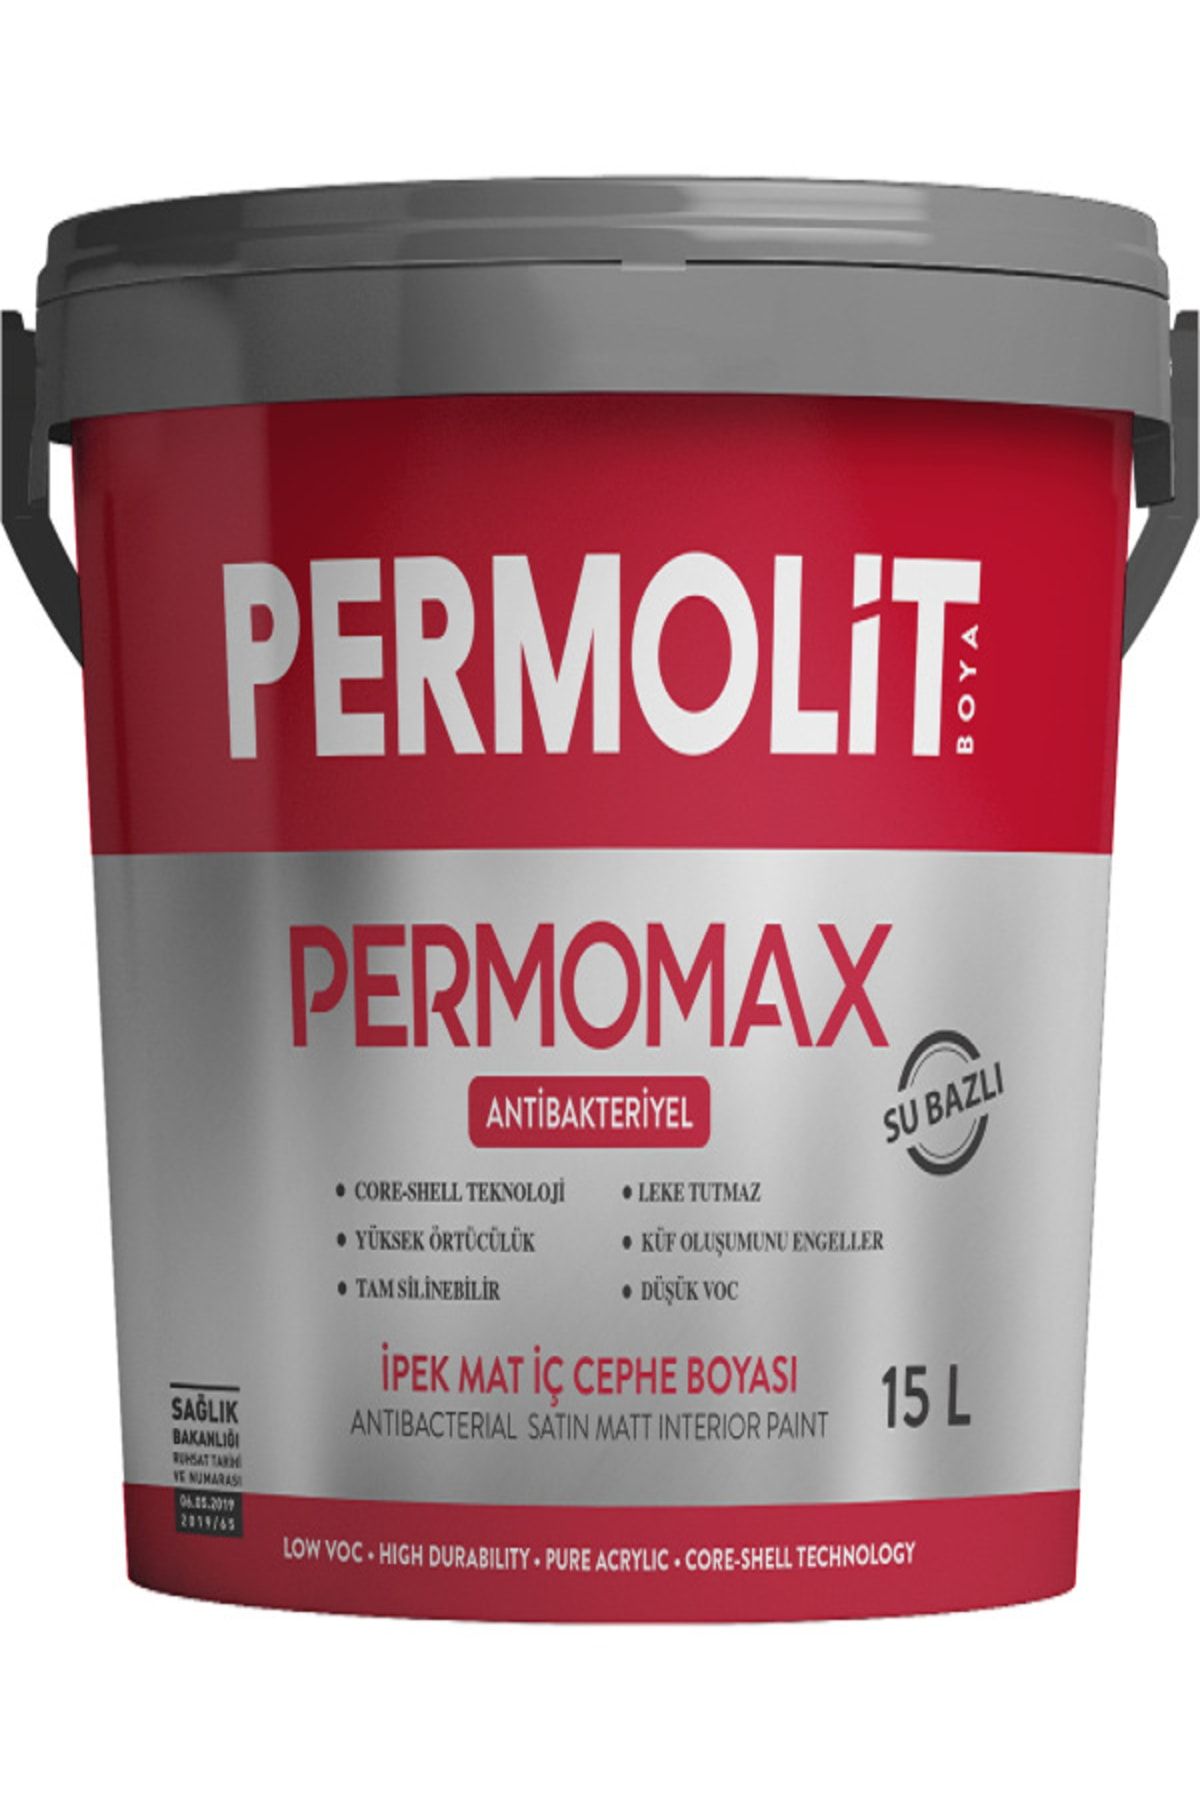 Permolit Permomax Antibakteriyel Küf Önleyici Silikonlu Silinebilir Iç Cephe Duvar Boyası Beyaz 2,5lt -3,5kg